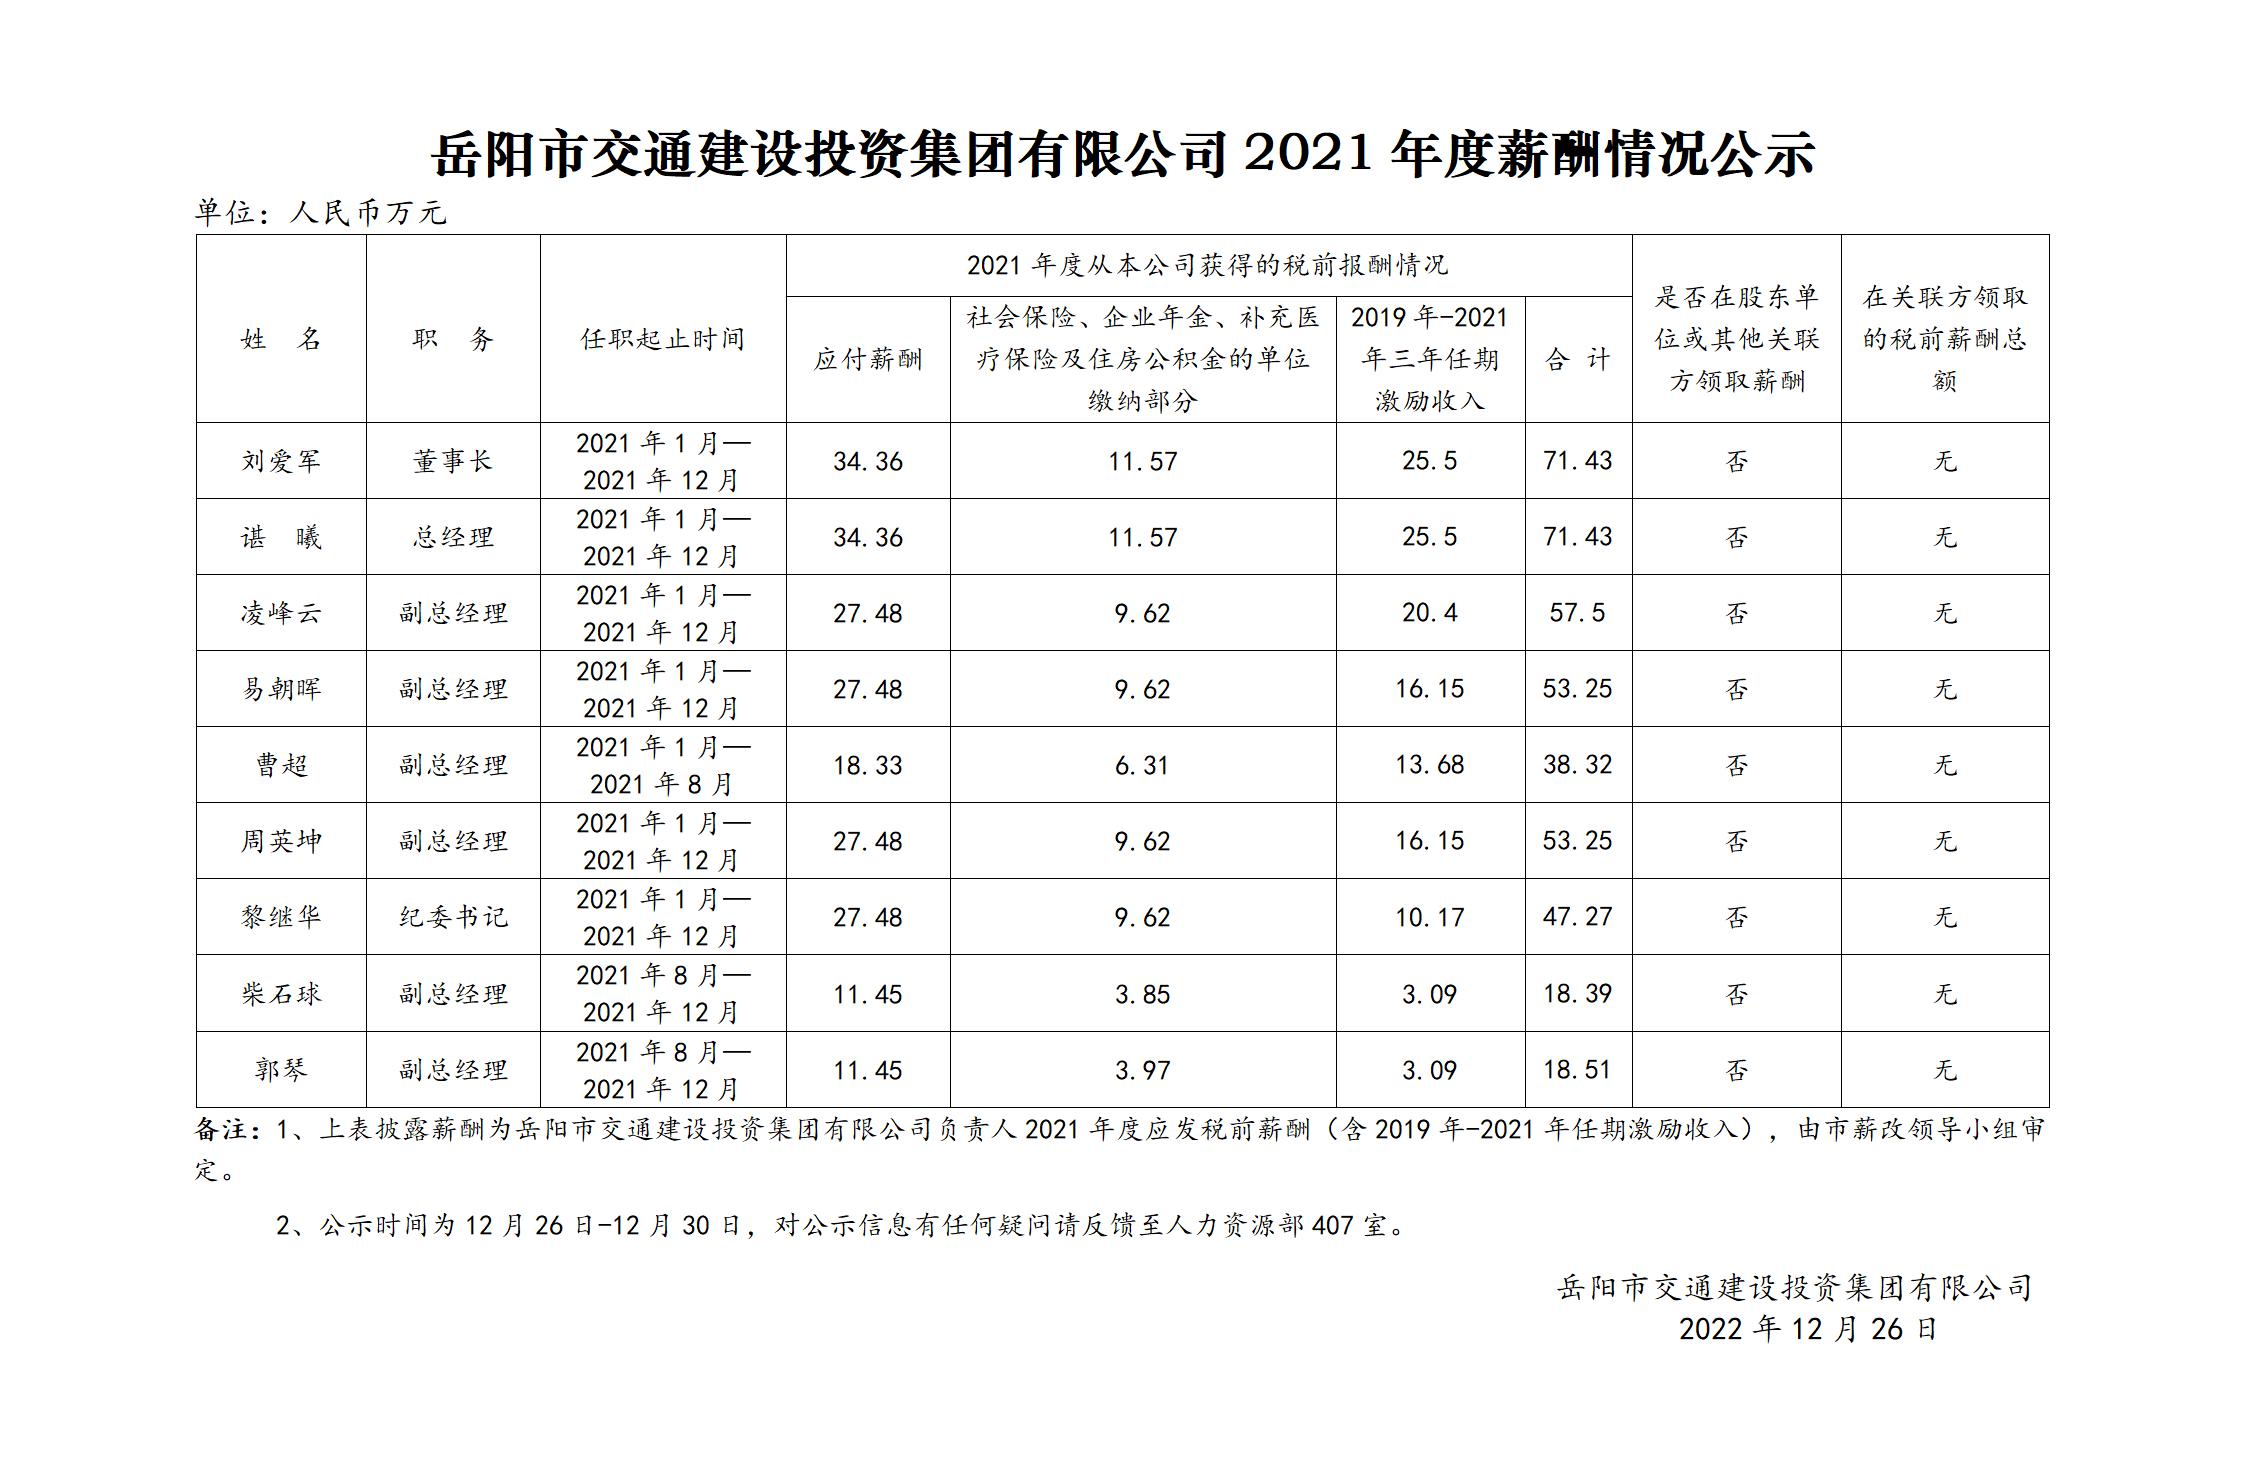 岳陽市交通建設投資集團有限公司2021年度薪酬情況公示_01.jpg